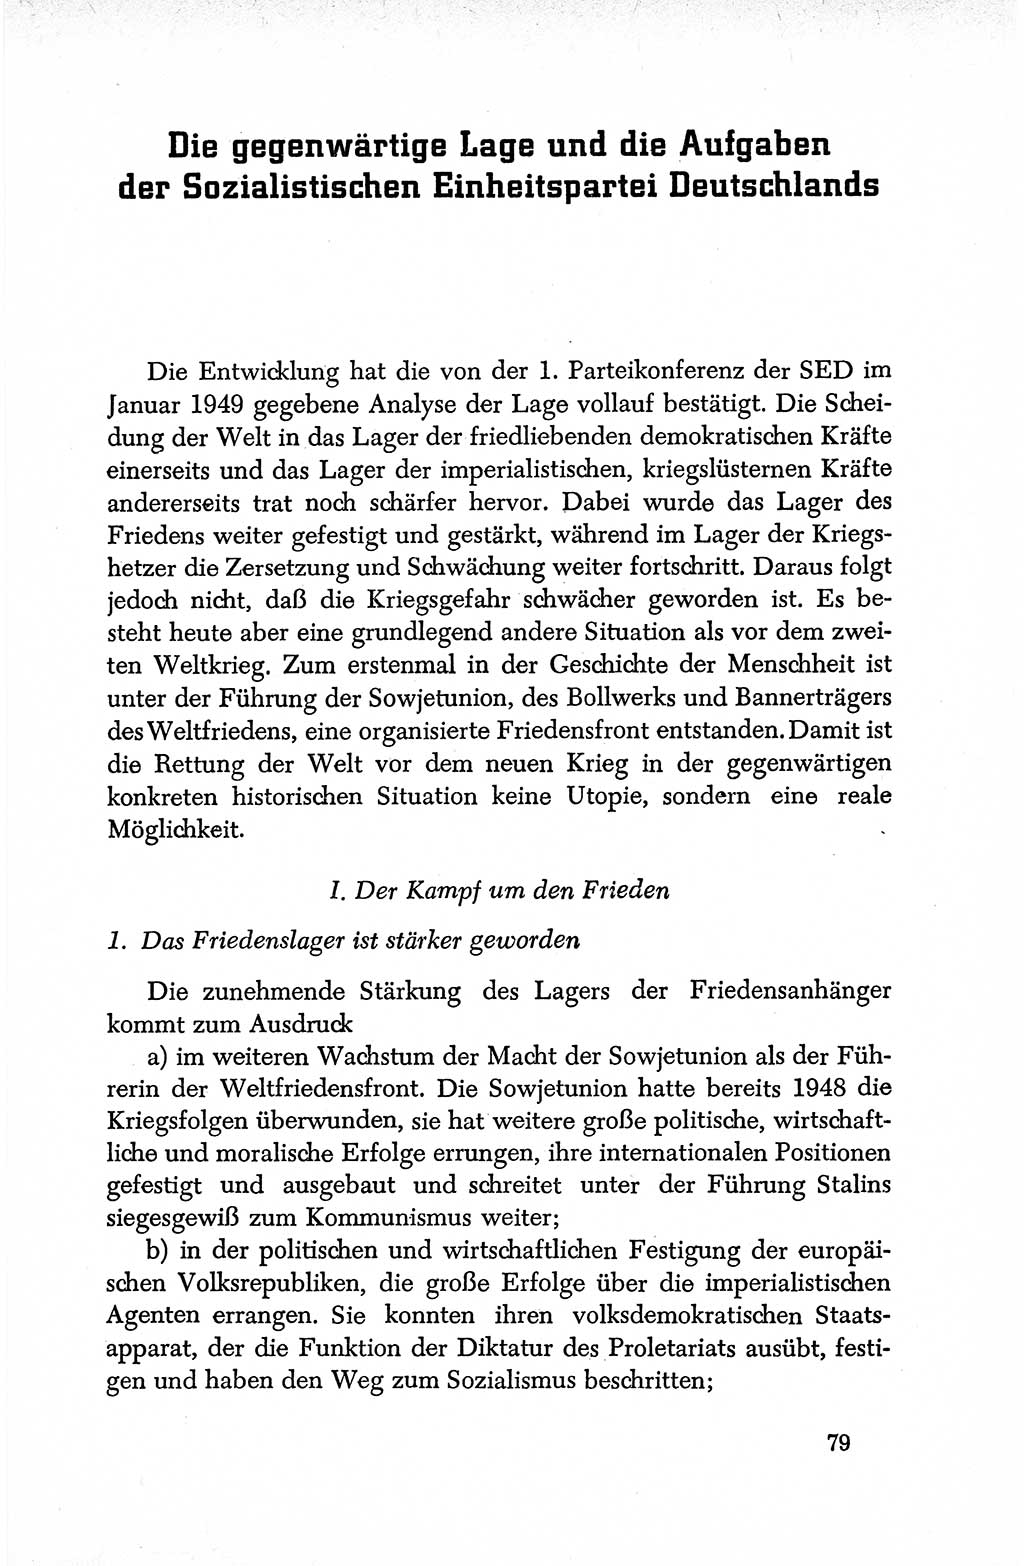 Dokumente der Sozialistischen Einheitspartei Deutschlands (SED) [Deutsche Demokratische Republik (DDR)] 1950-1952, Seite 79 (Dok. SED DDR 1950-1952, S. 79)